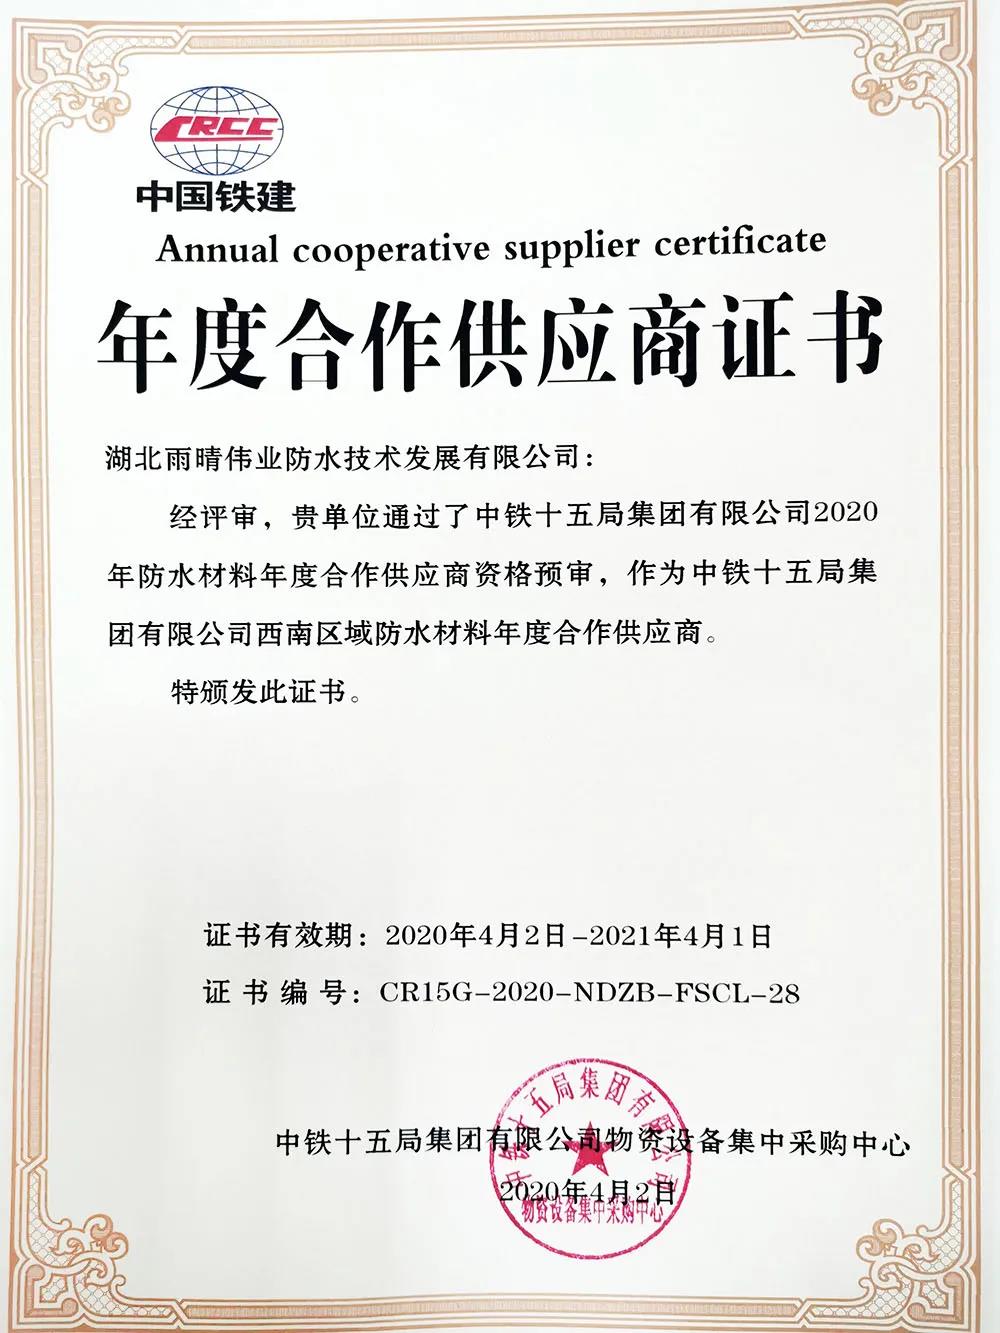 喜讯：湖北雨晴伟业公司获得中铁十五局集团2020年年度合作供应商资格！！！